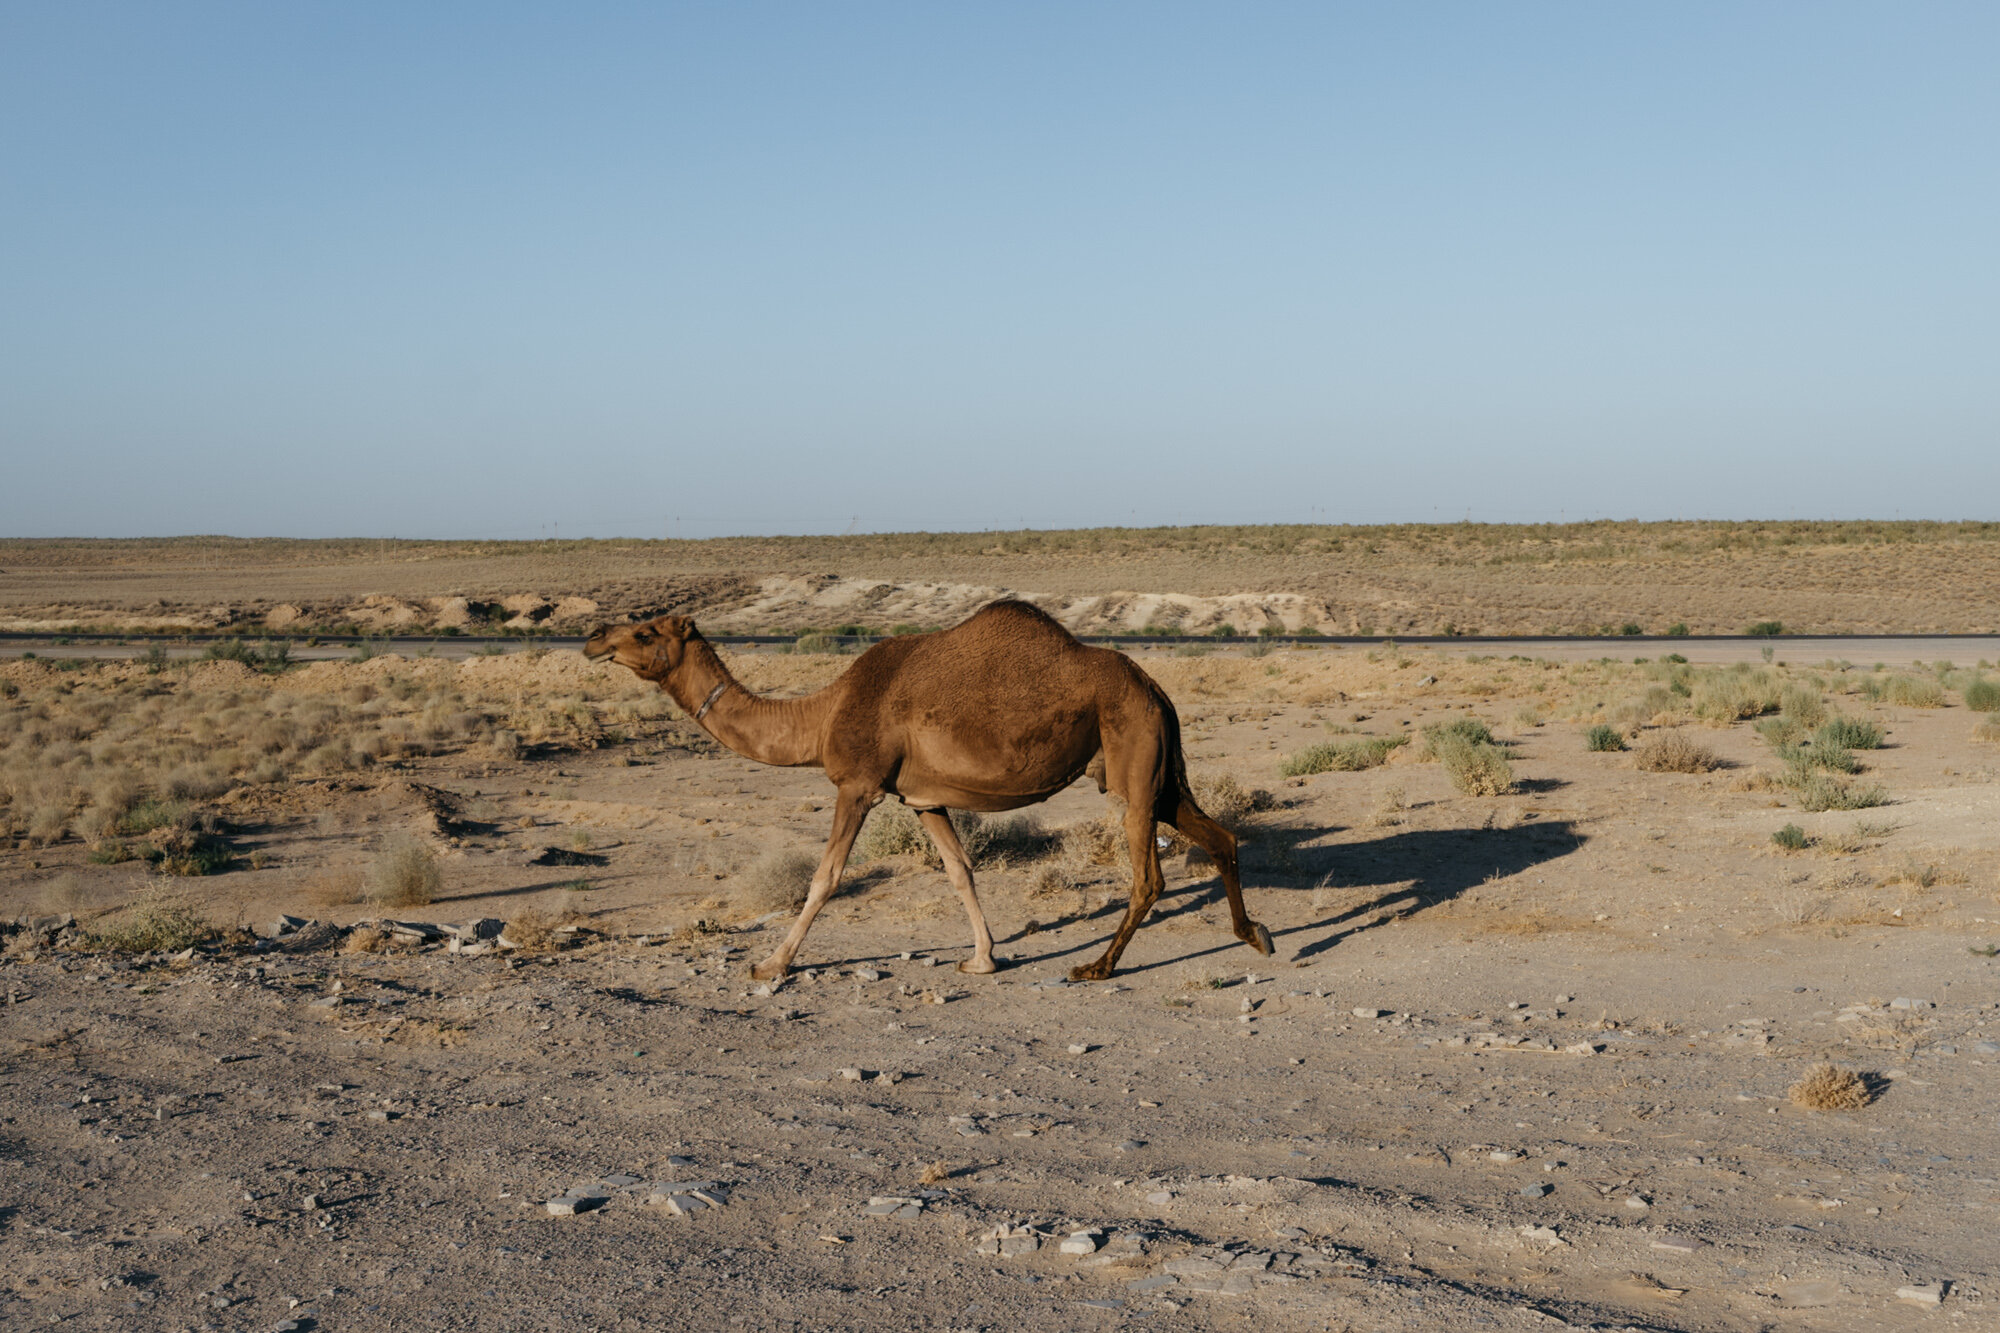  A nearby dromedary of the Arabian variety 